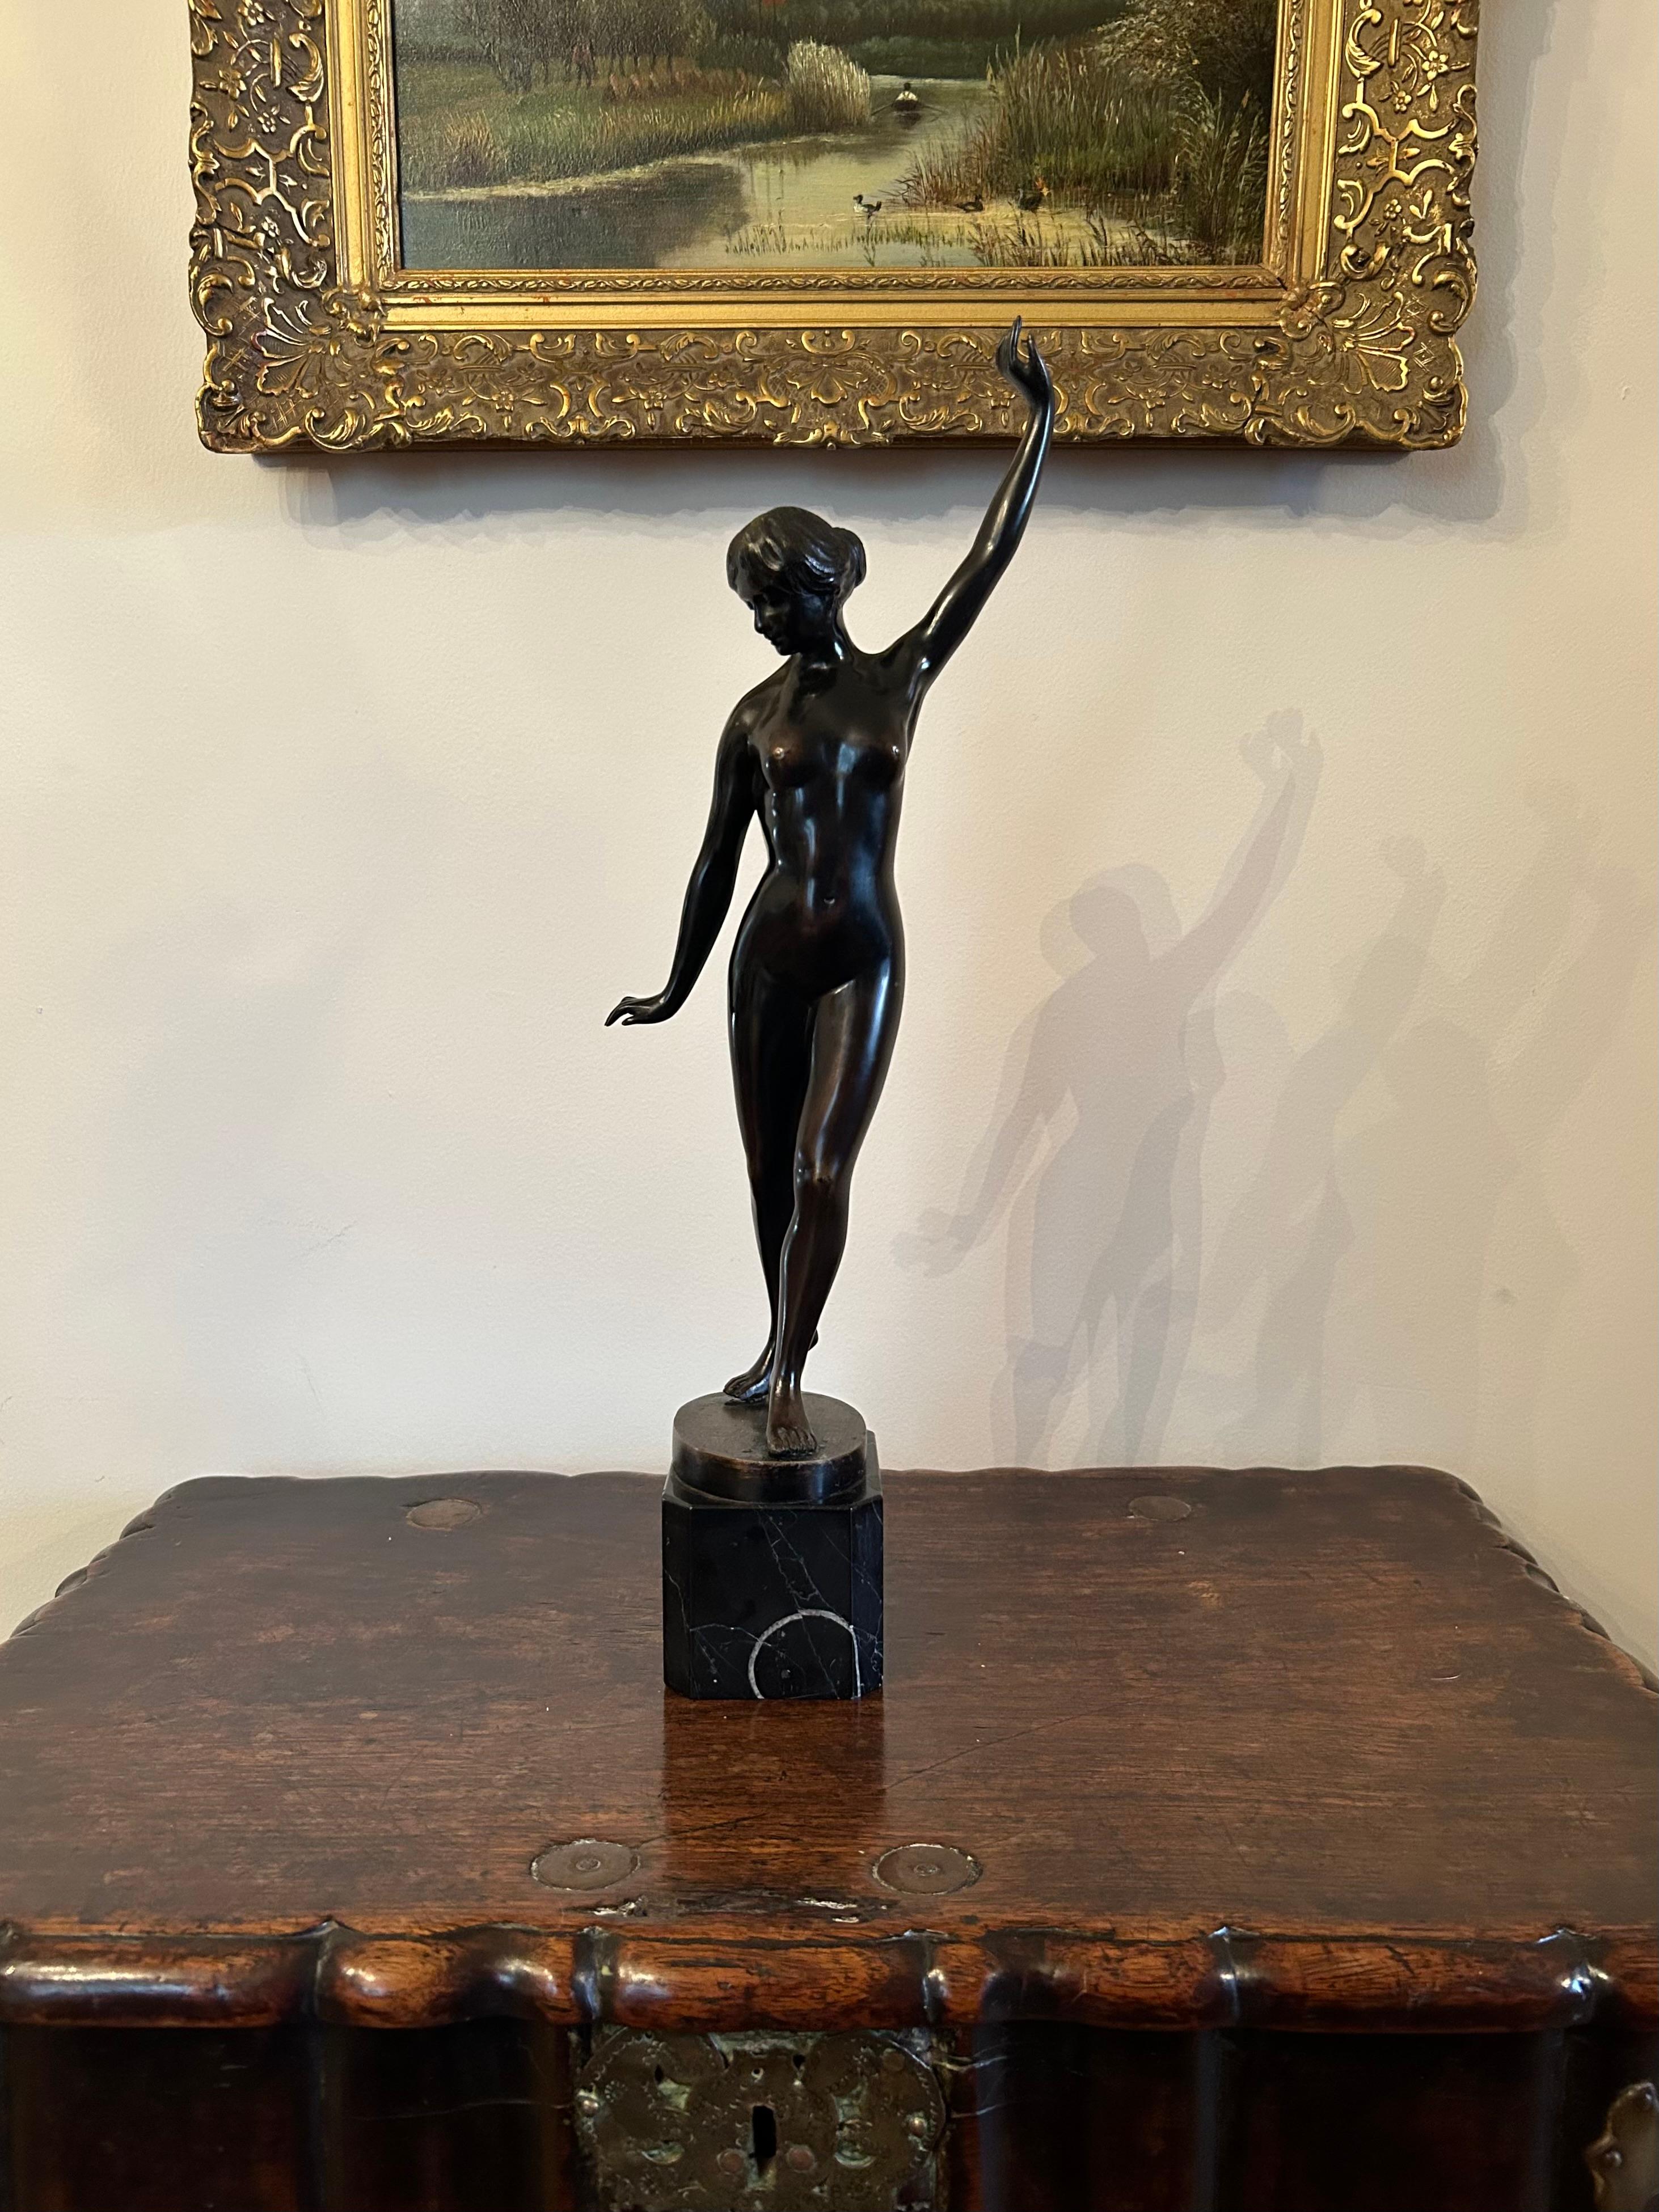 Eine schöne kontinentale Bronzefigur einer stehenden Frau auf einem schwarzen Marmorsockel. Anfang des 20. Jahrhunderts, auf dem Sockel unleserlich signiert.
Diese elegante Bronze hat eine wunderbare Patina und ist so beweglich, als ob die Figur im